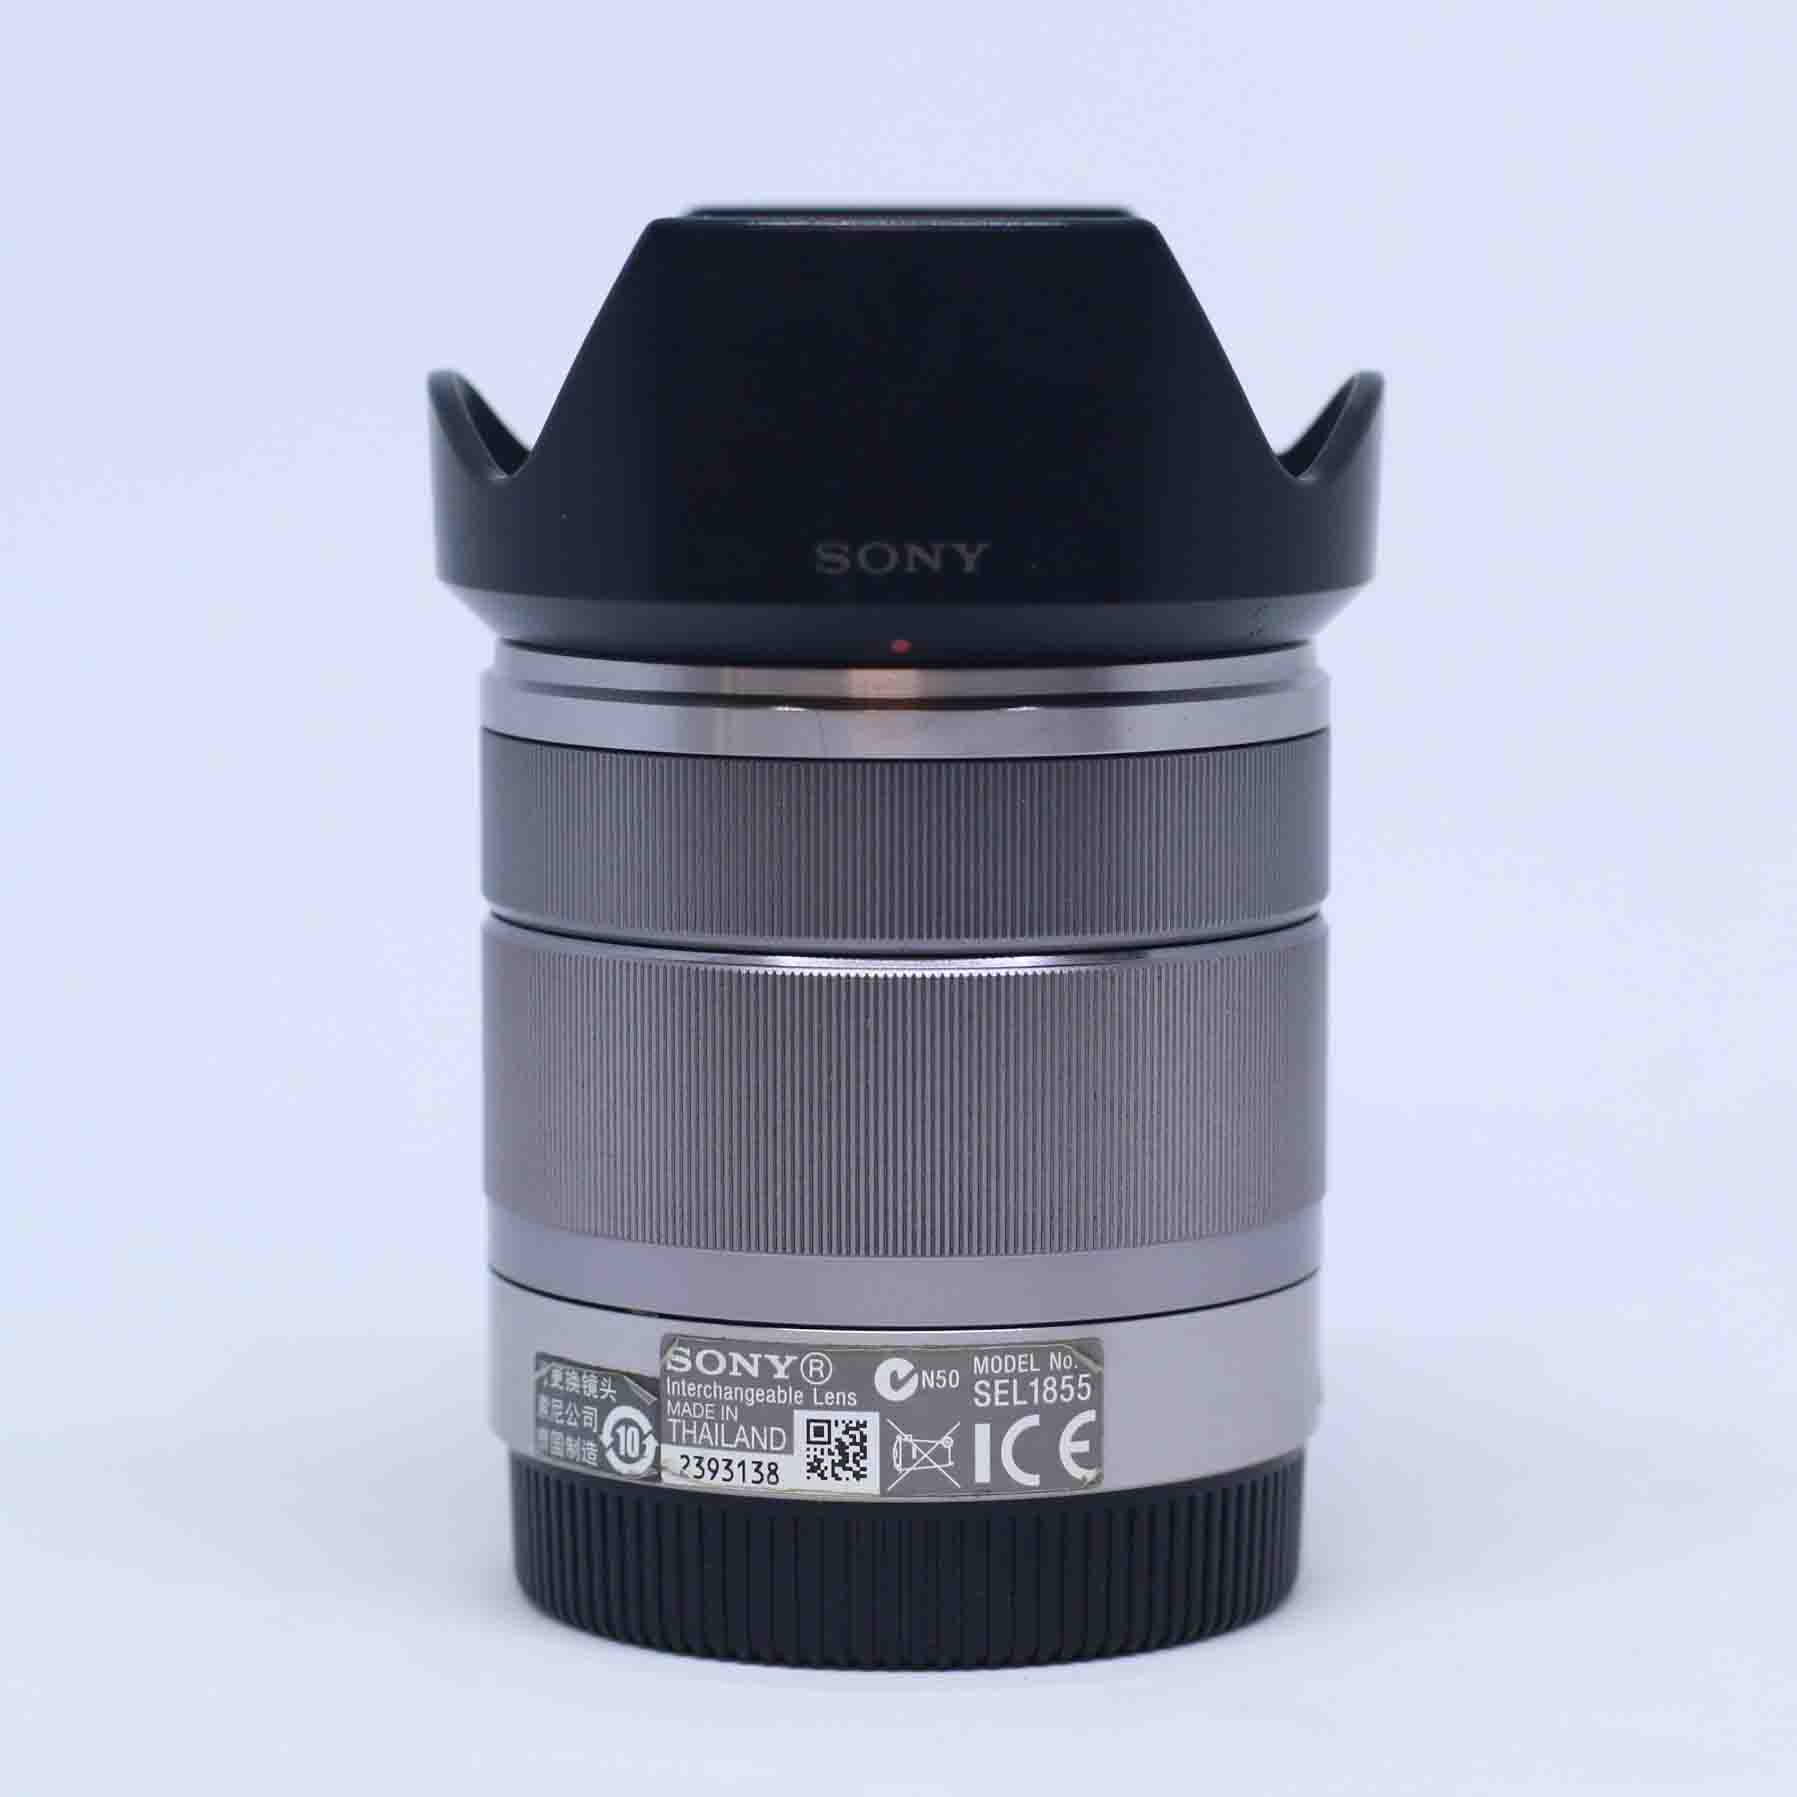 Ống kính Sony 18-55mm F/3.5-5.6